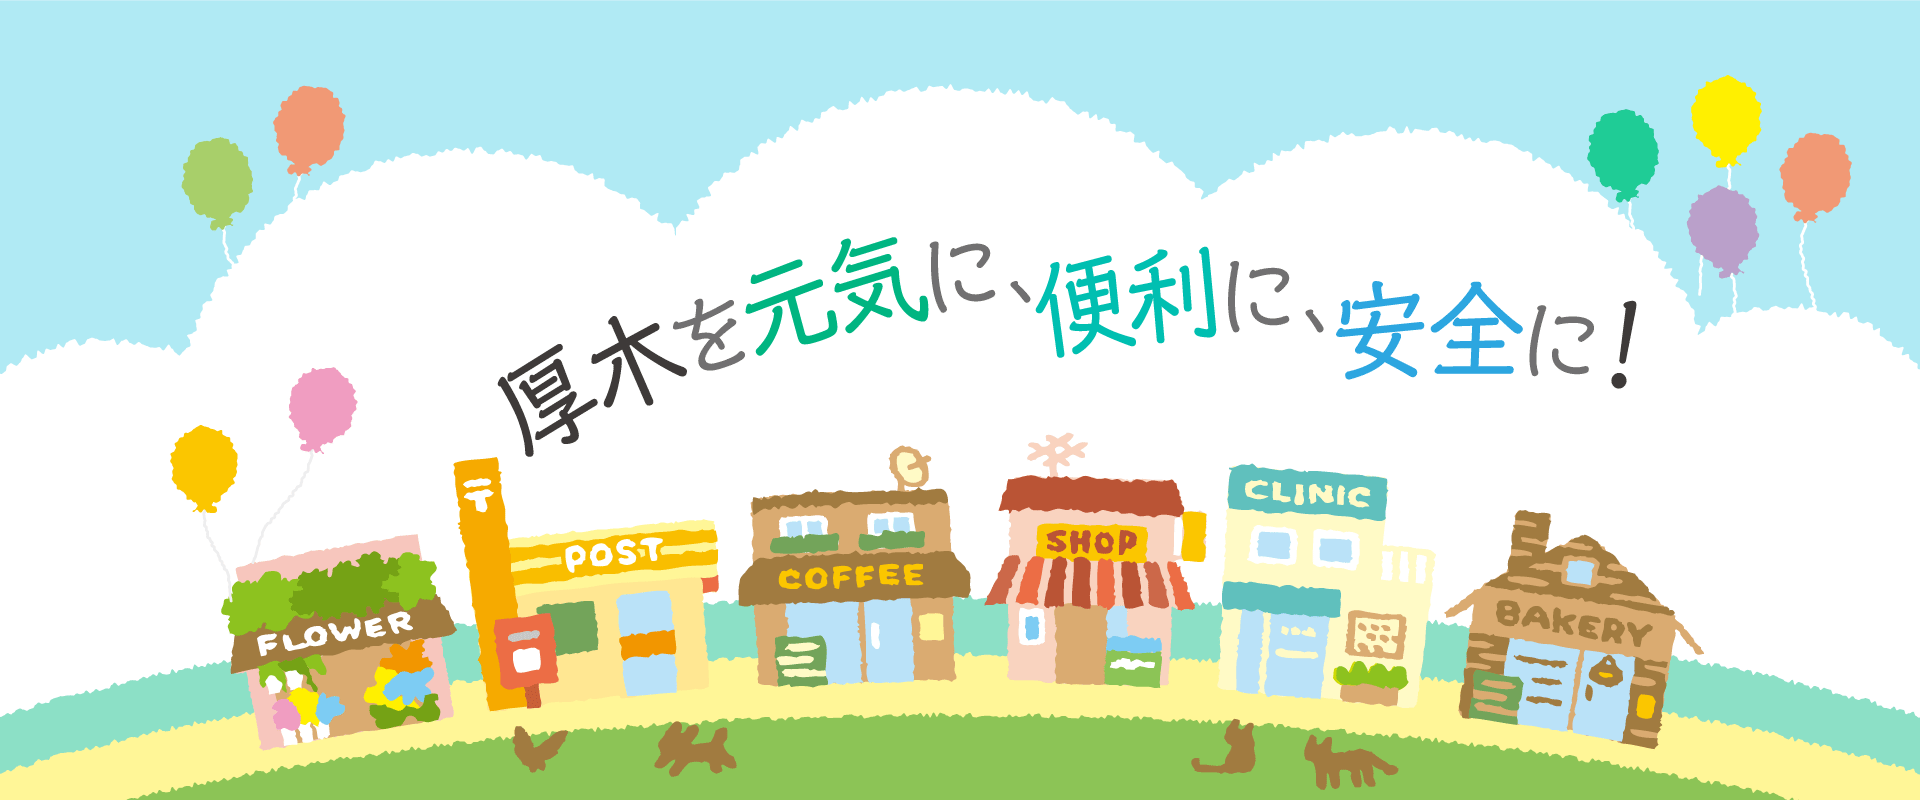 小田急線本厚木駅北口、厚木市の中心街にあるあつぎ商和会のホームページです。